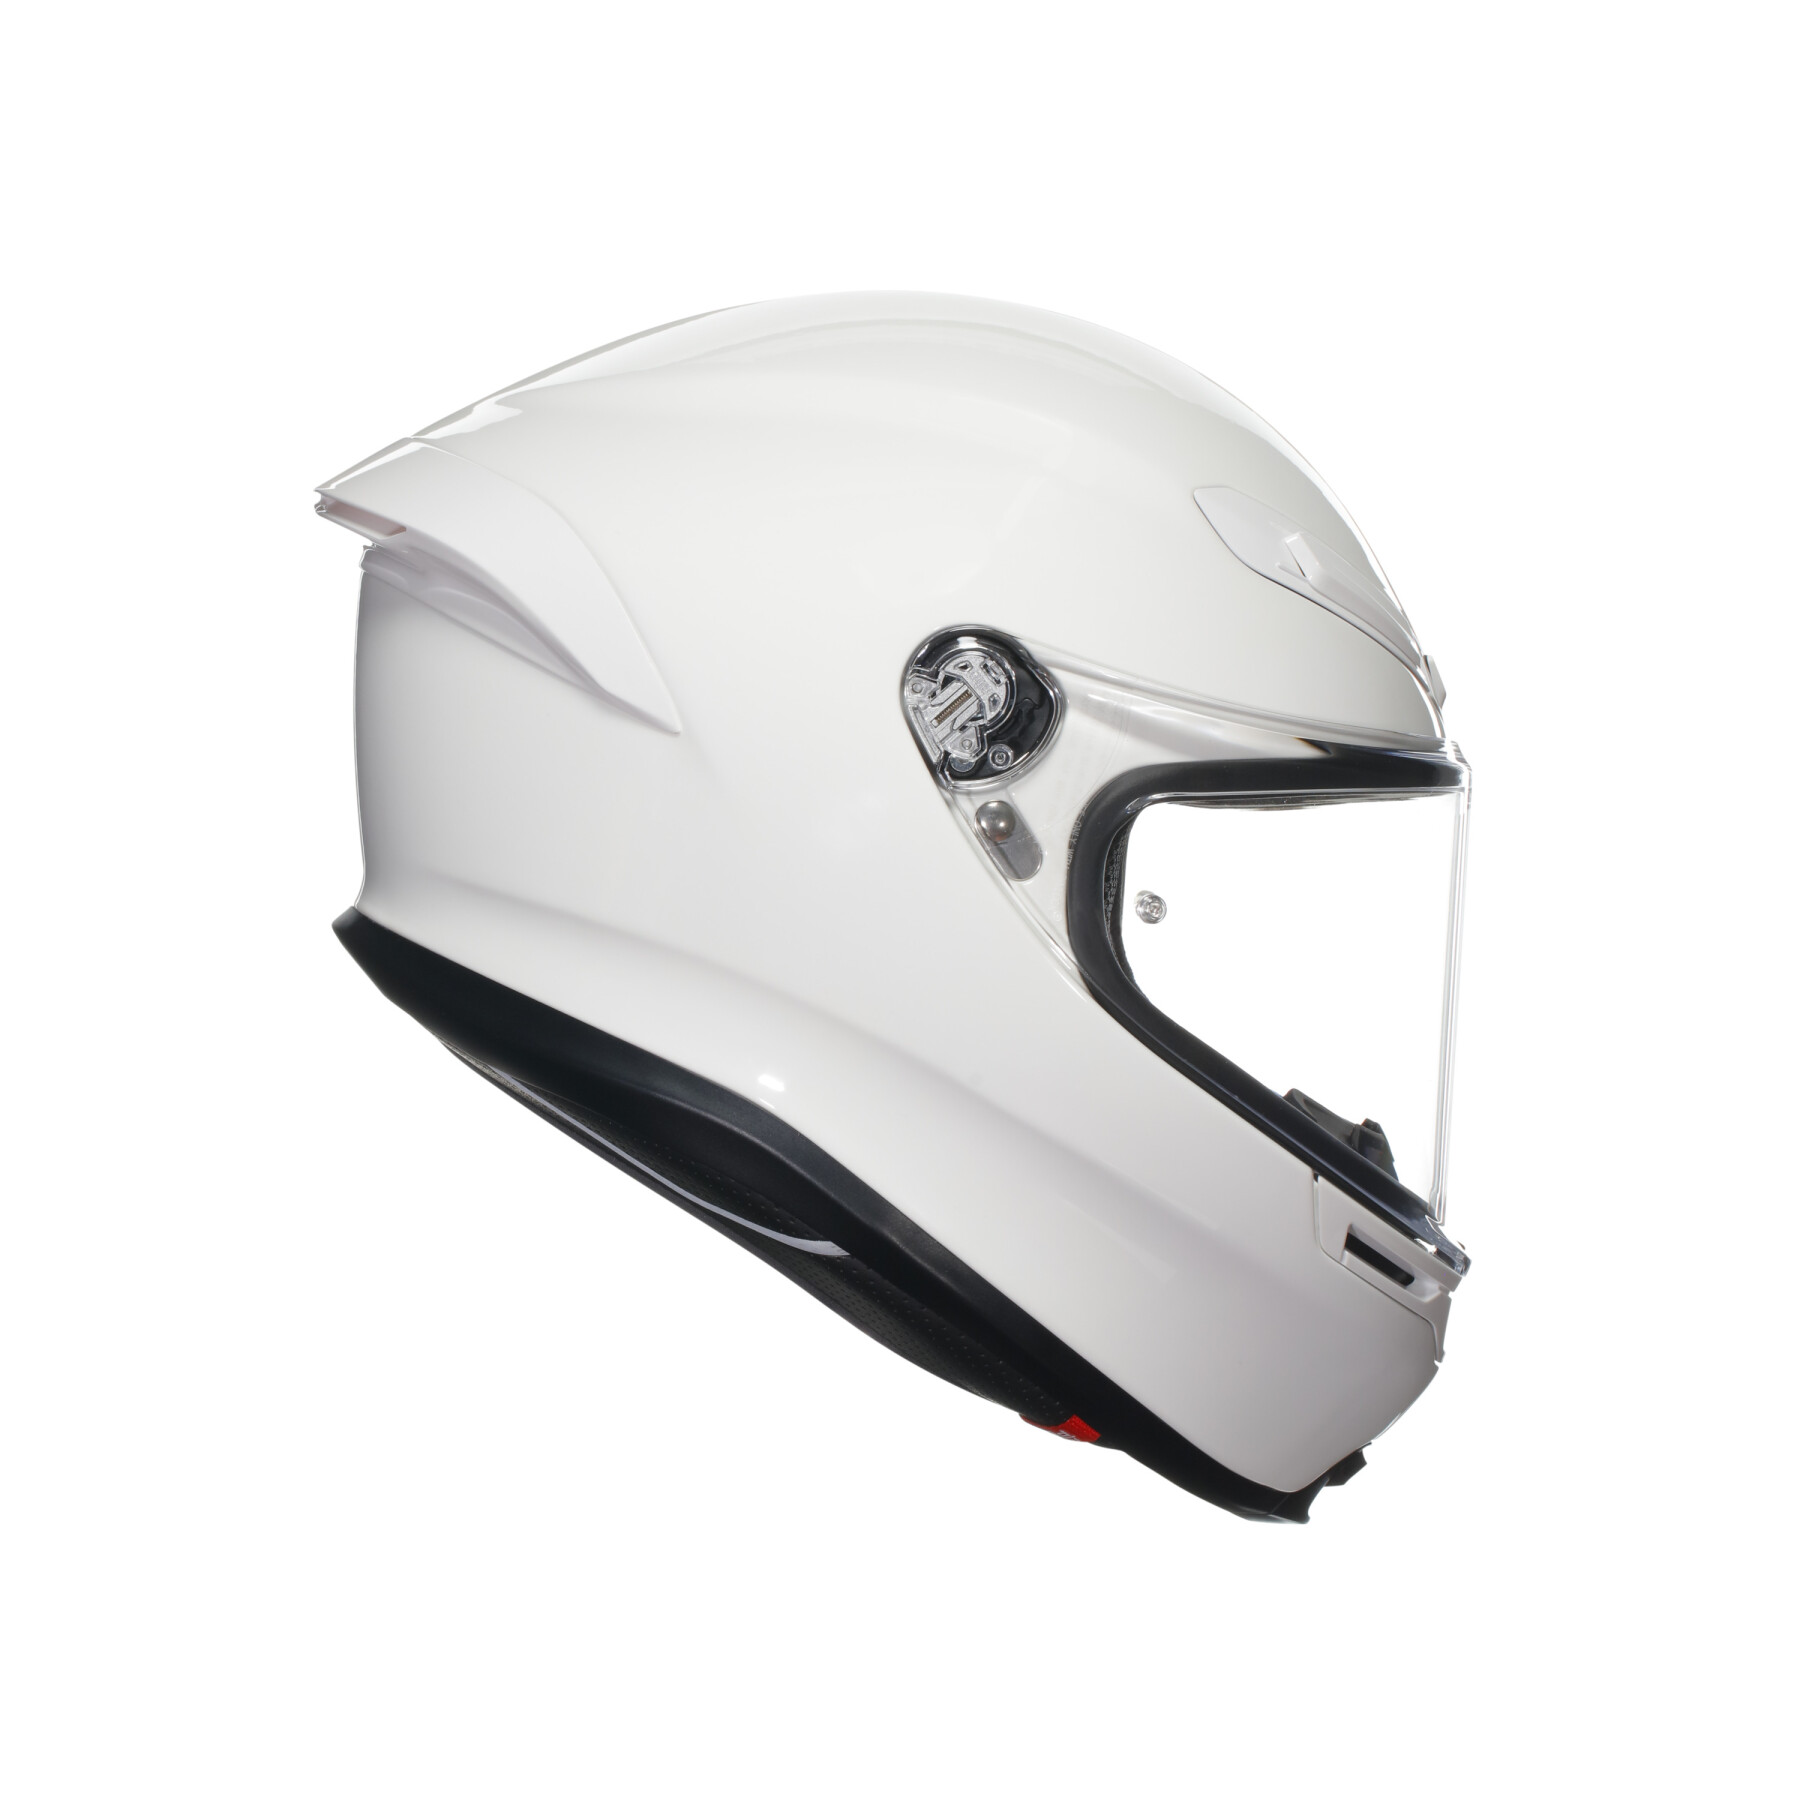 Full face motorcycle helmet AGV K6 S